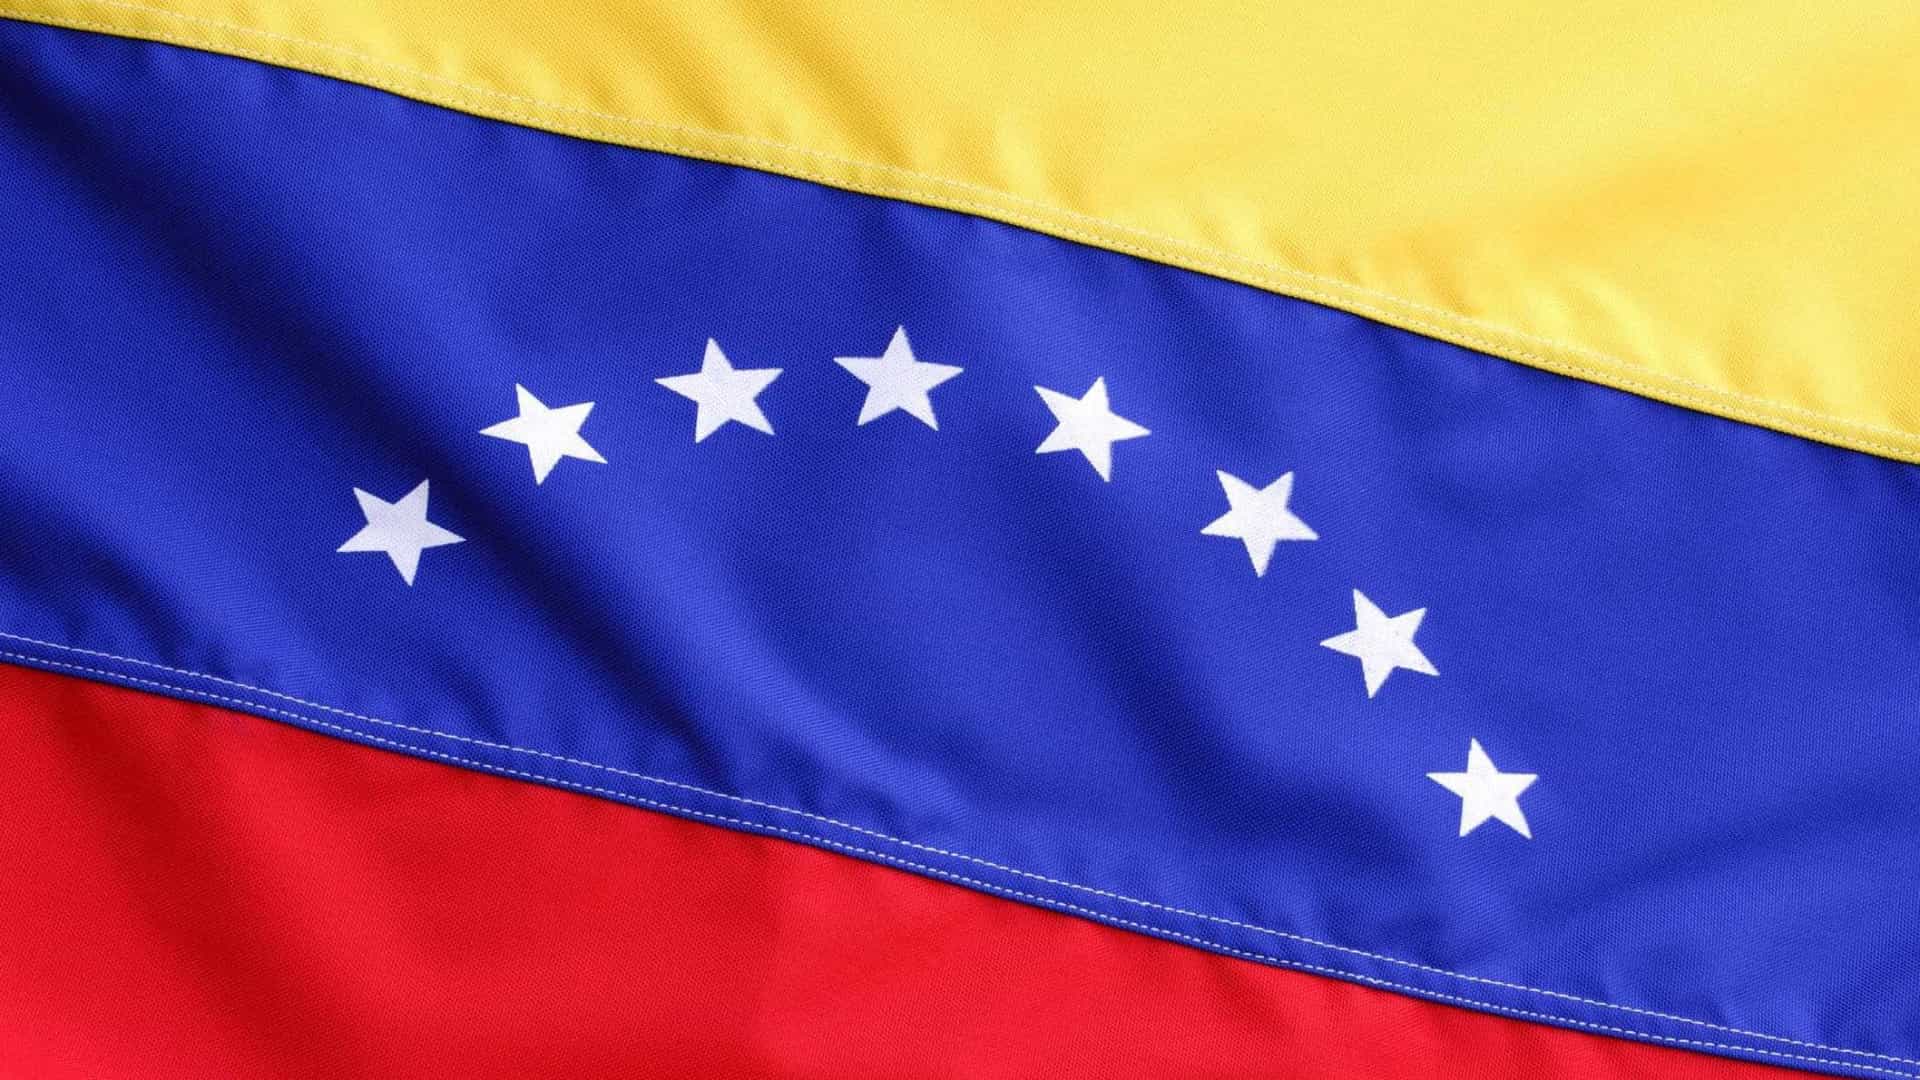 cne da venezuela acusa eua de querem desacreditar democracia